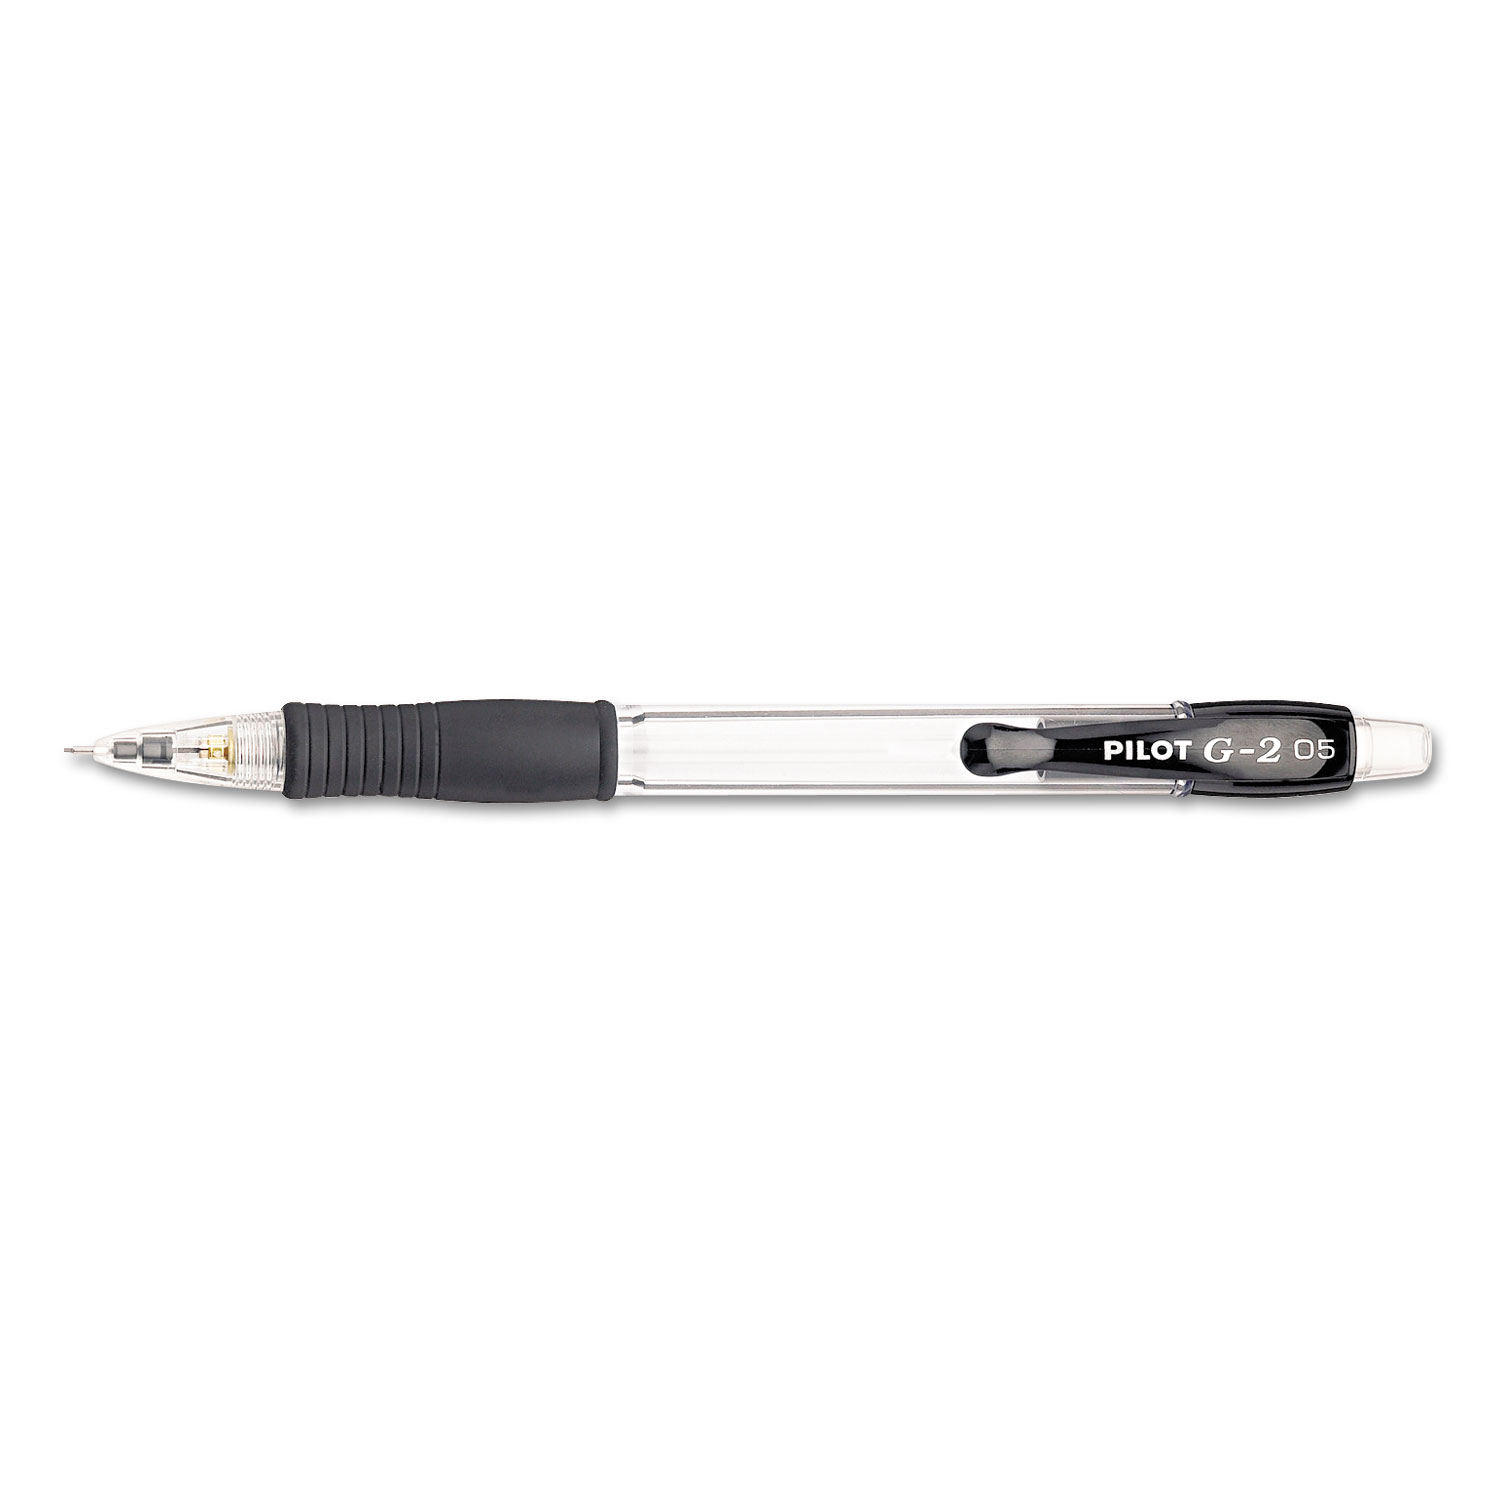  Pilot 51014 G2 Mechanical Pencil, 0.5 mm, HB (#2.5), Black Lead, Clear/Black Accents Barrel, Dozen (PIL51014) 